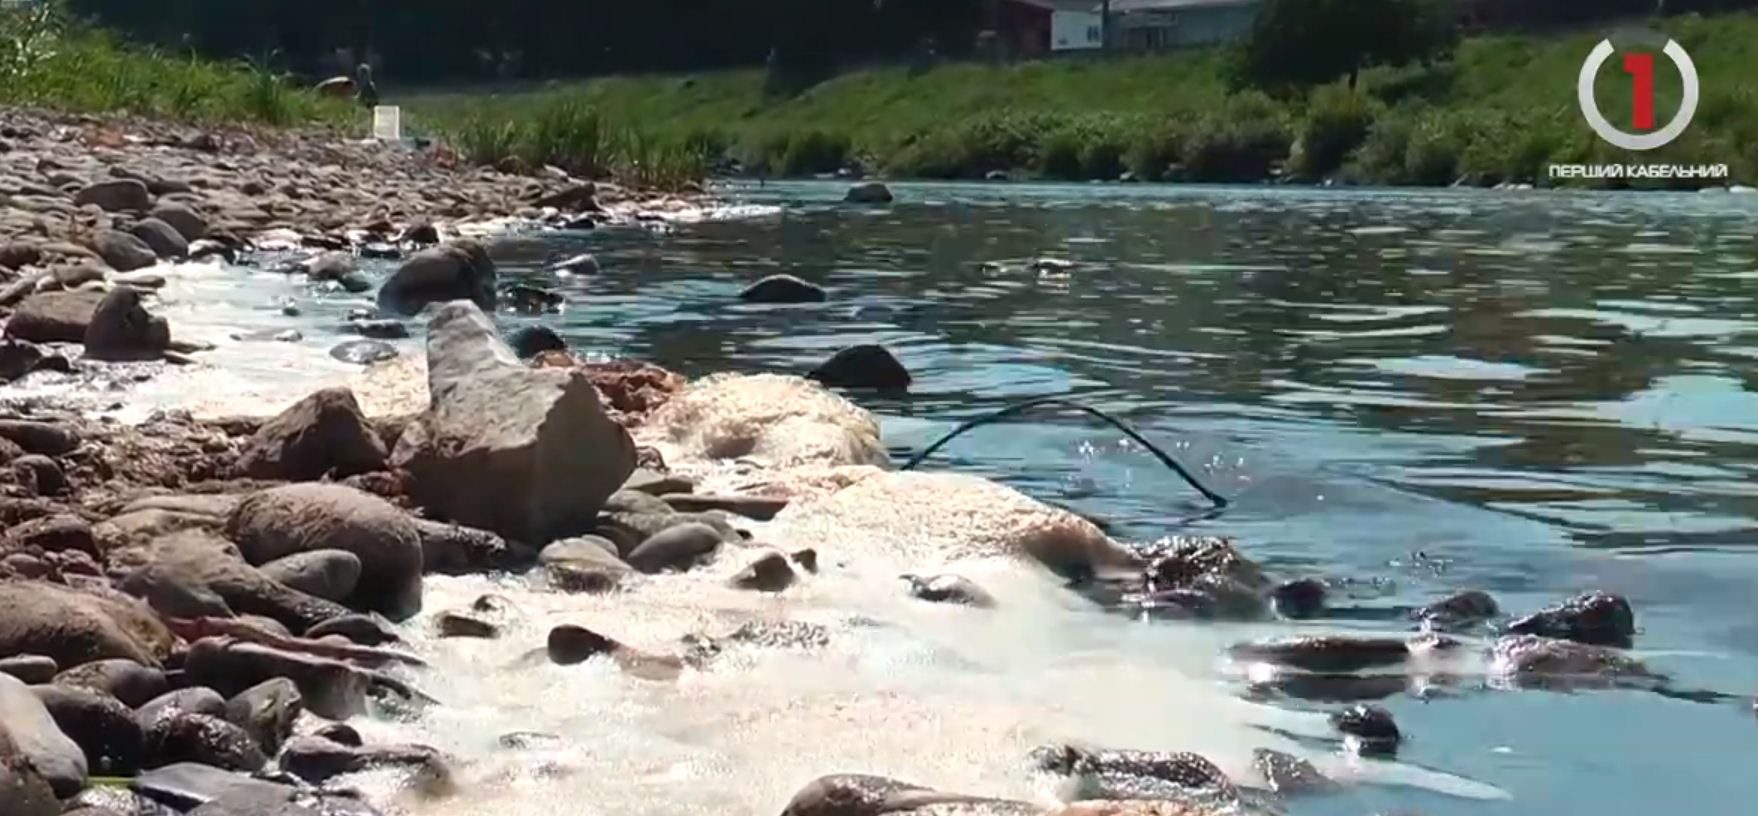 Кишкова паличка, брудна вода: у мукачівській річці Латориці купатися заборонено (ВІДЕО)